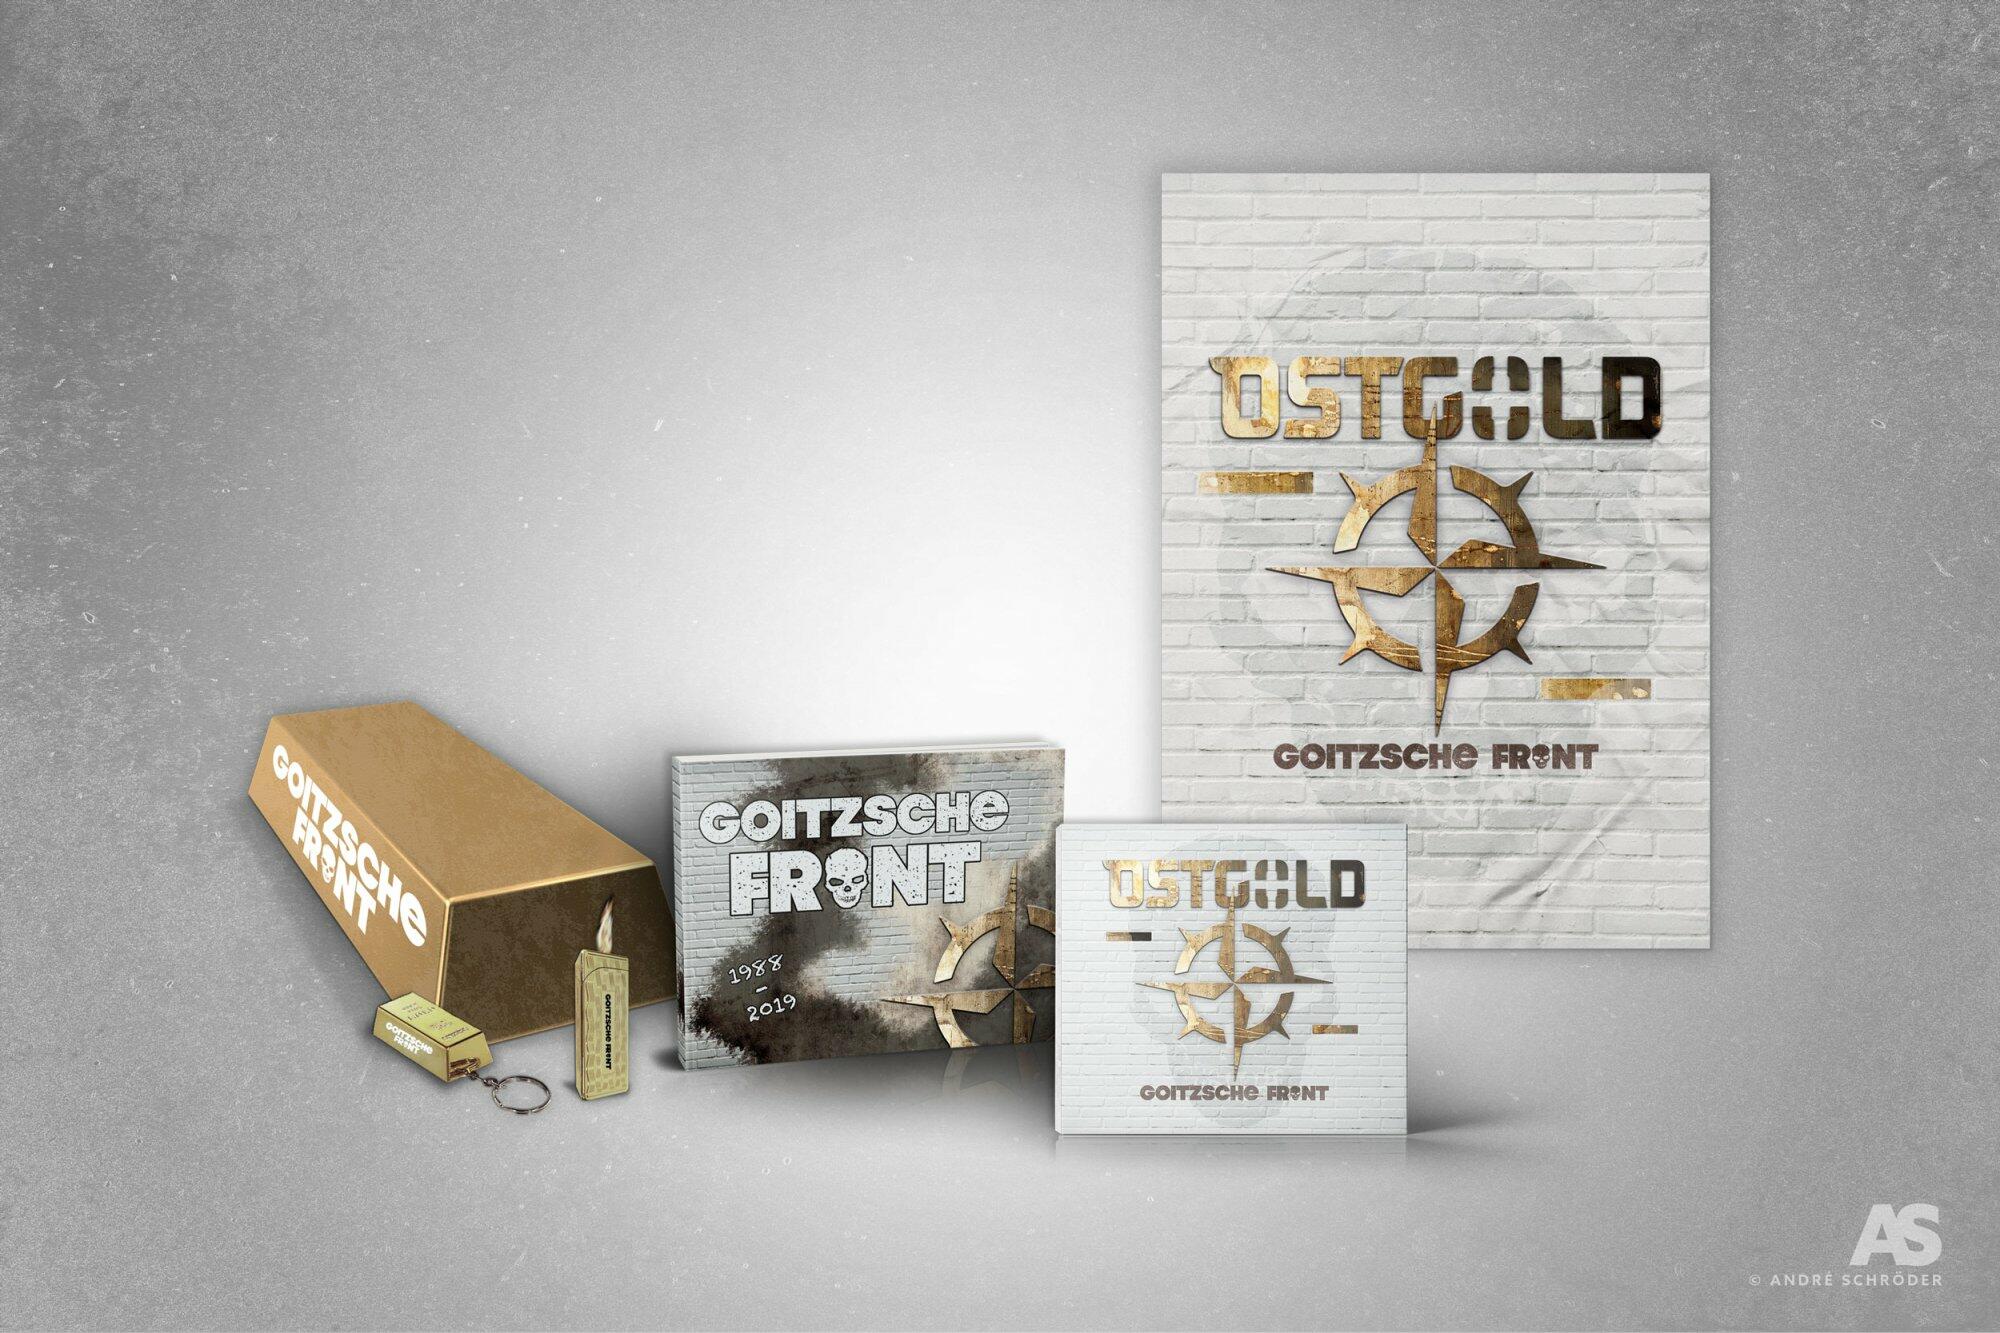 Goitzsche Front - Ostgold Box ltd. Edition